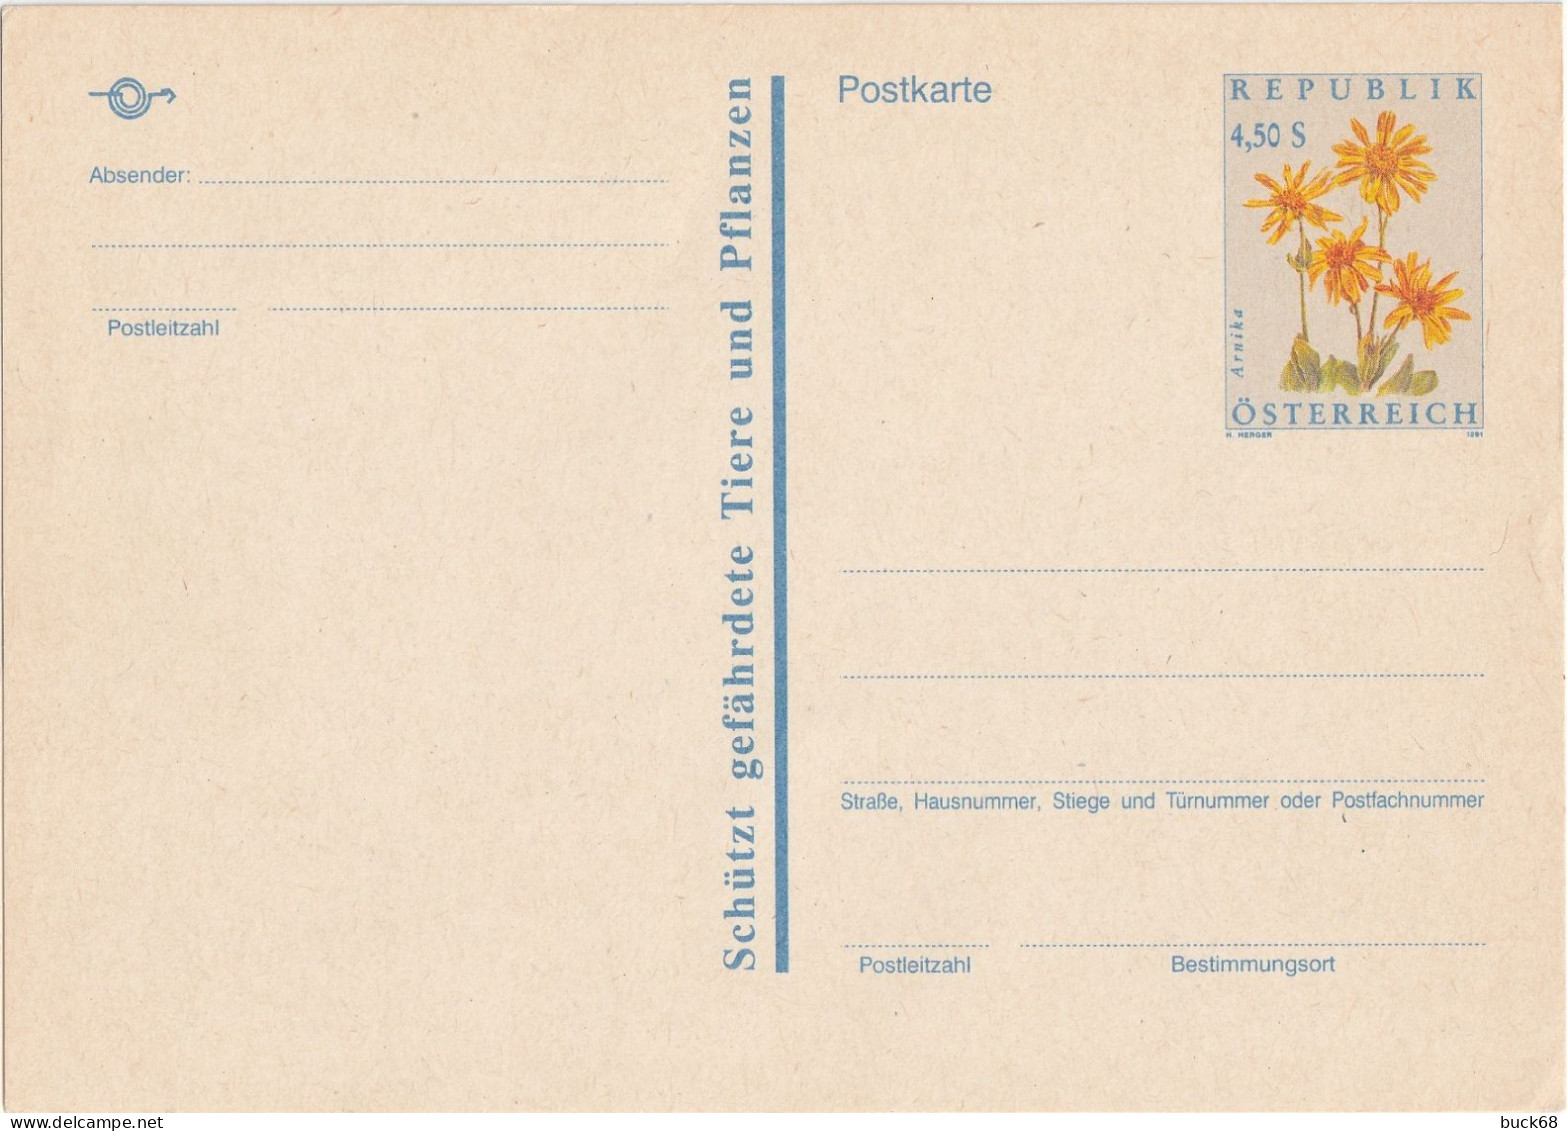 AUTRICHE AUSTRIA ÖSTERREICH Entier P509 Stationary Ganzsache Fleur Blume Flower Arnika Arnica 1991 - Cartes Postales